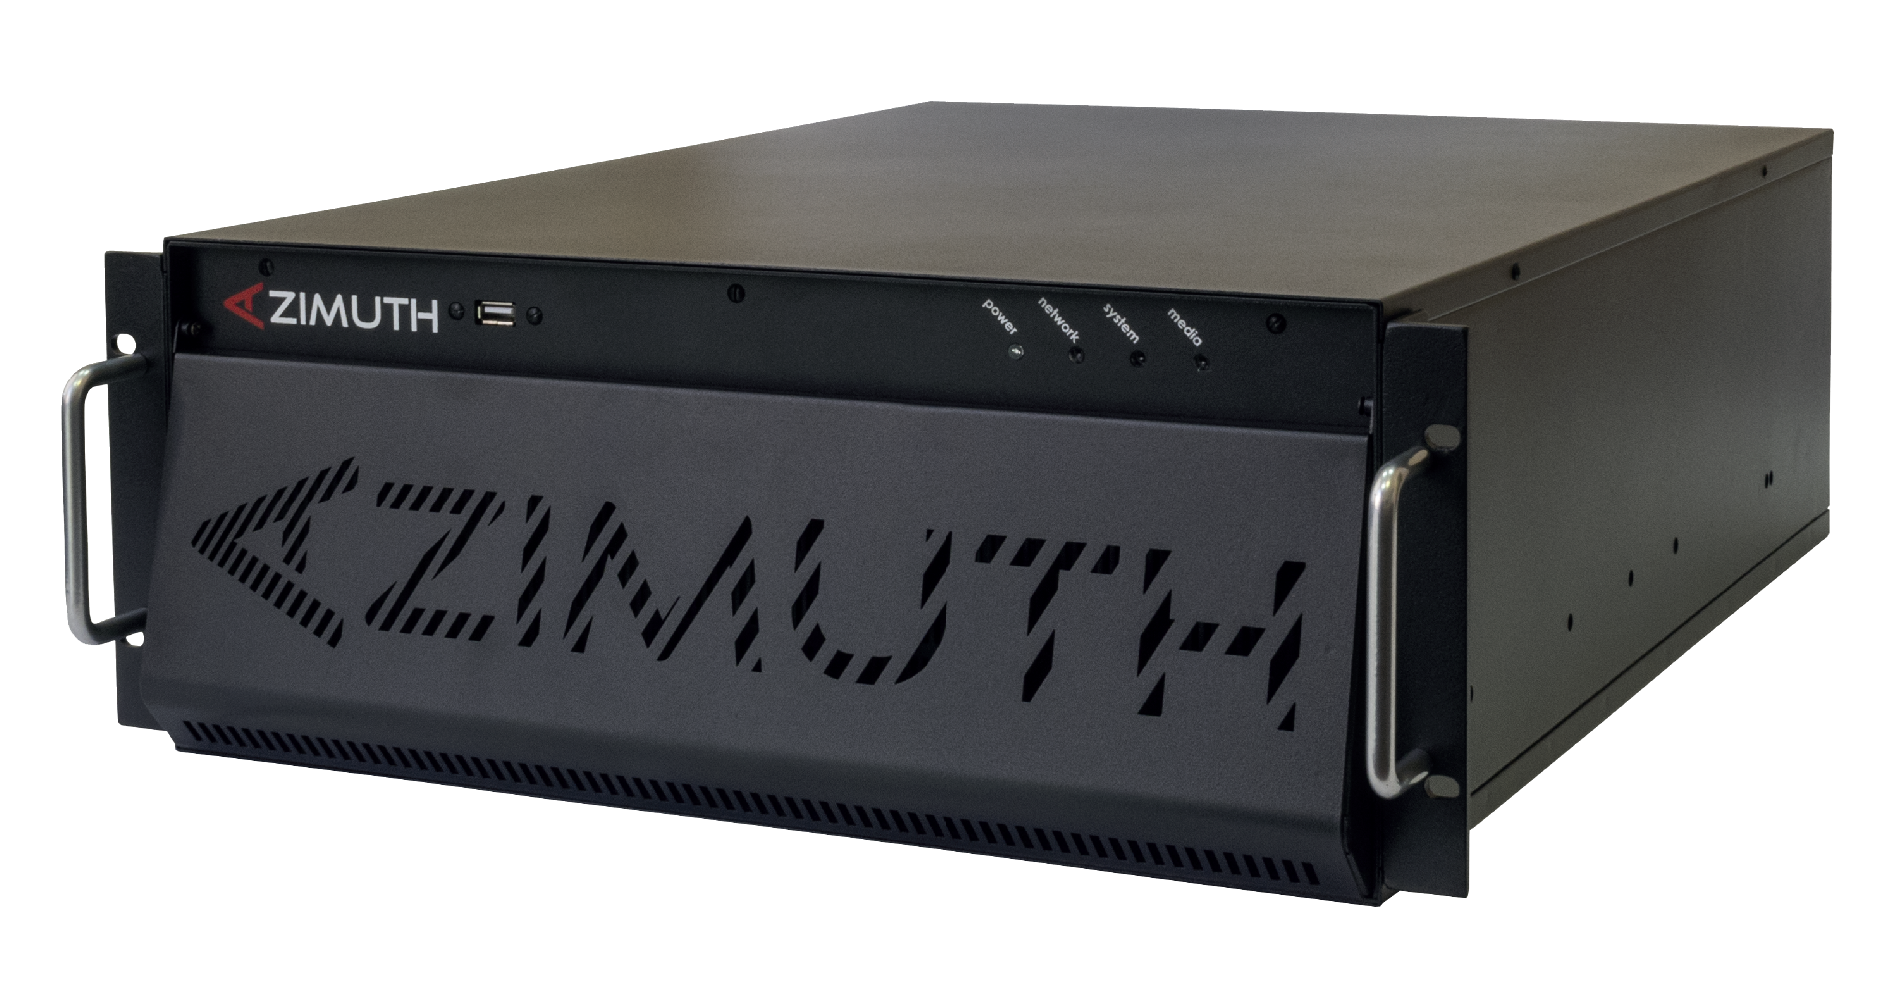 Многоканальные серверы серии Azimuth для записи, хранения и воспроизведения аудио-видеоматериалов